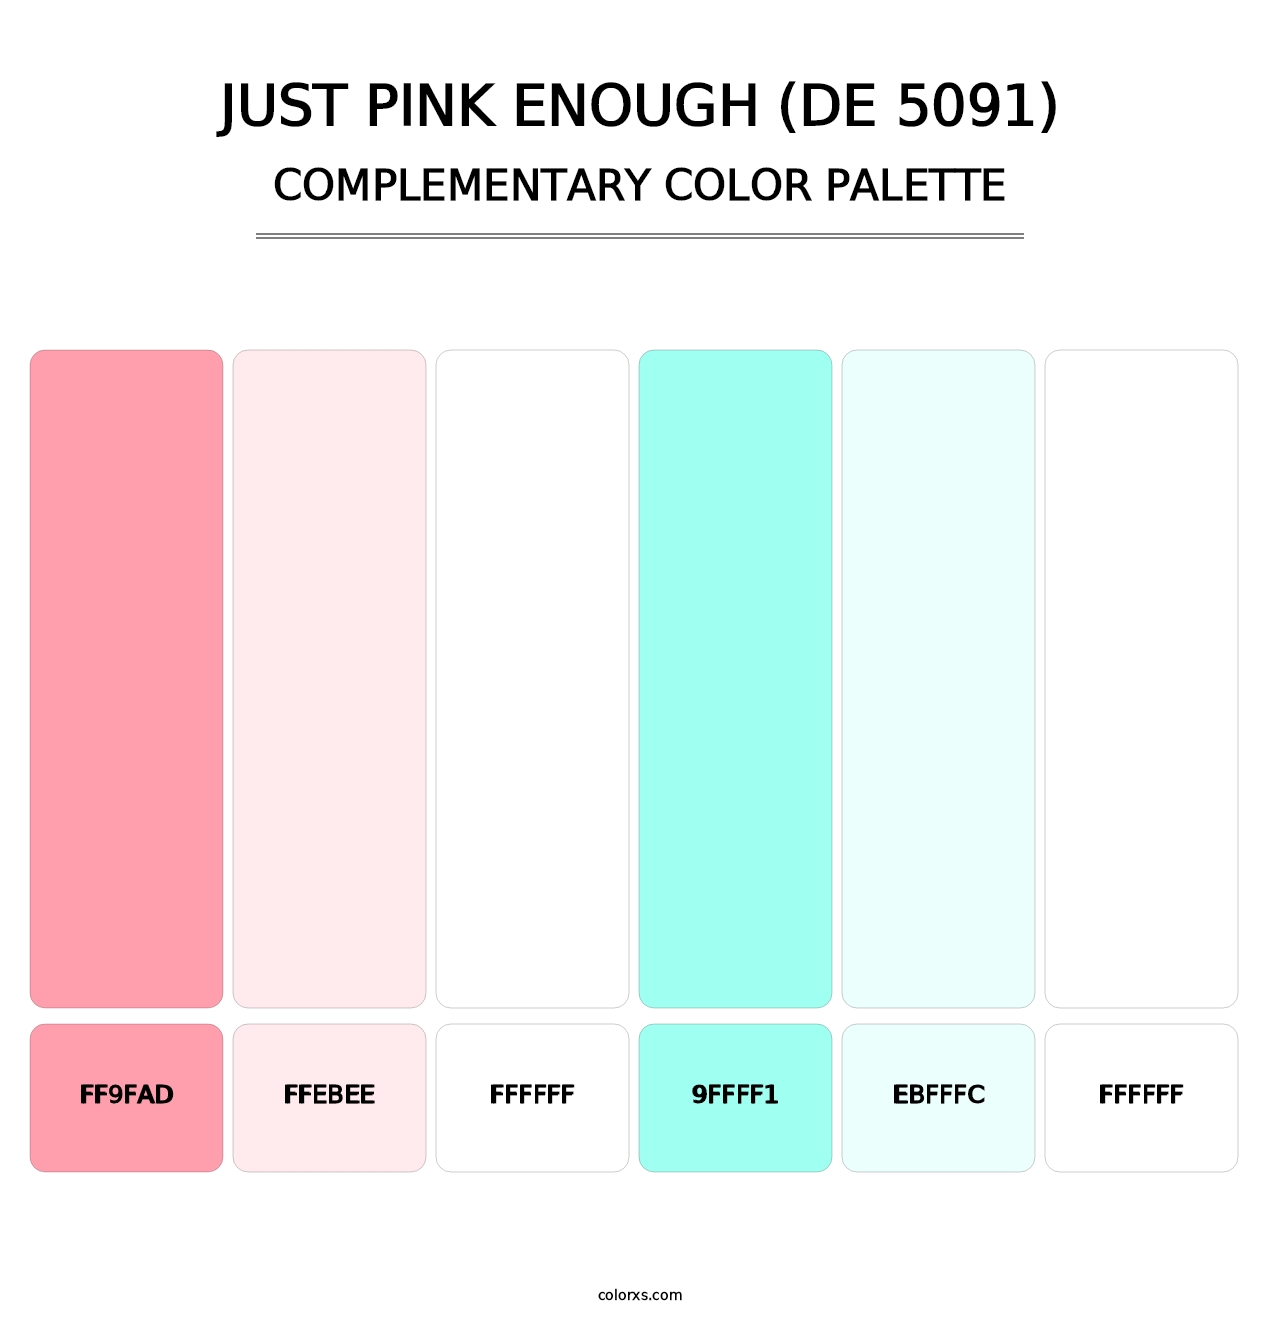 Just Pink Enough (DE 5091) - Complementary Color Palette